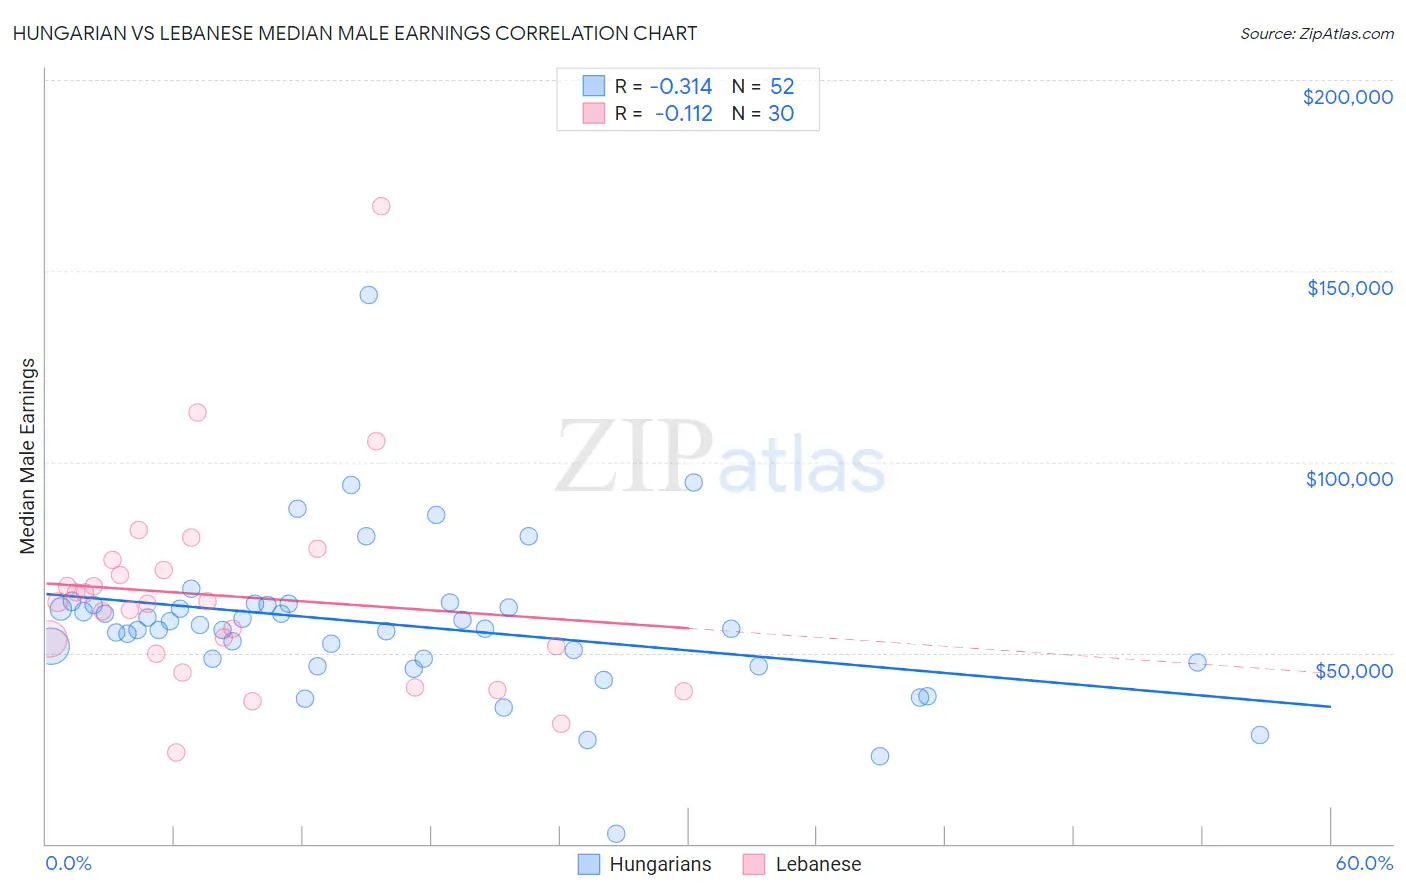 Hungarian vs Lebanese Median Male Earnings